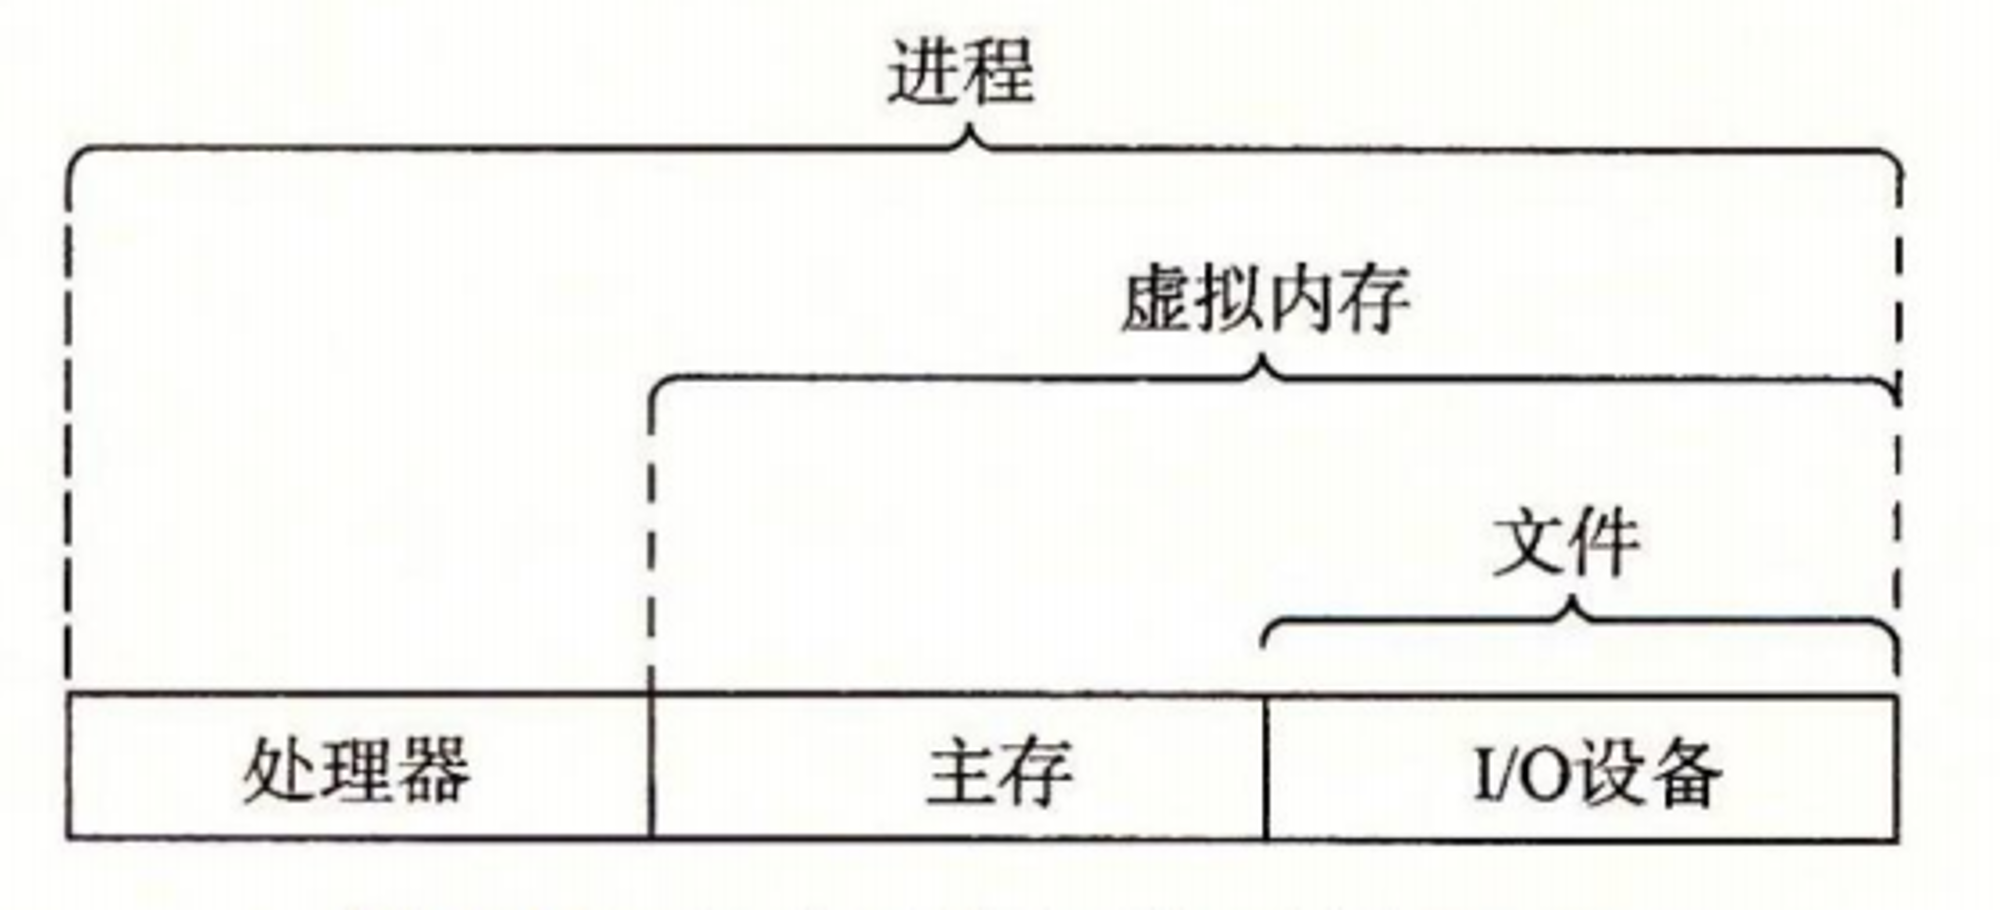 图1-11 操作系统提供的抽象表示